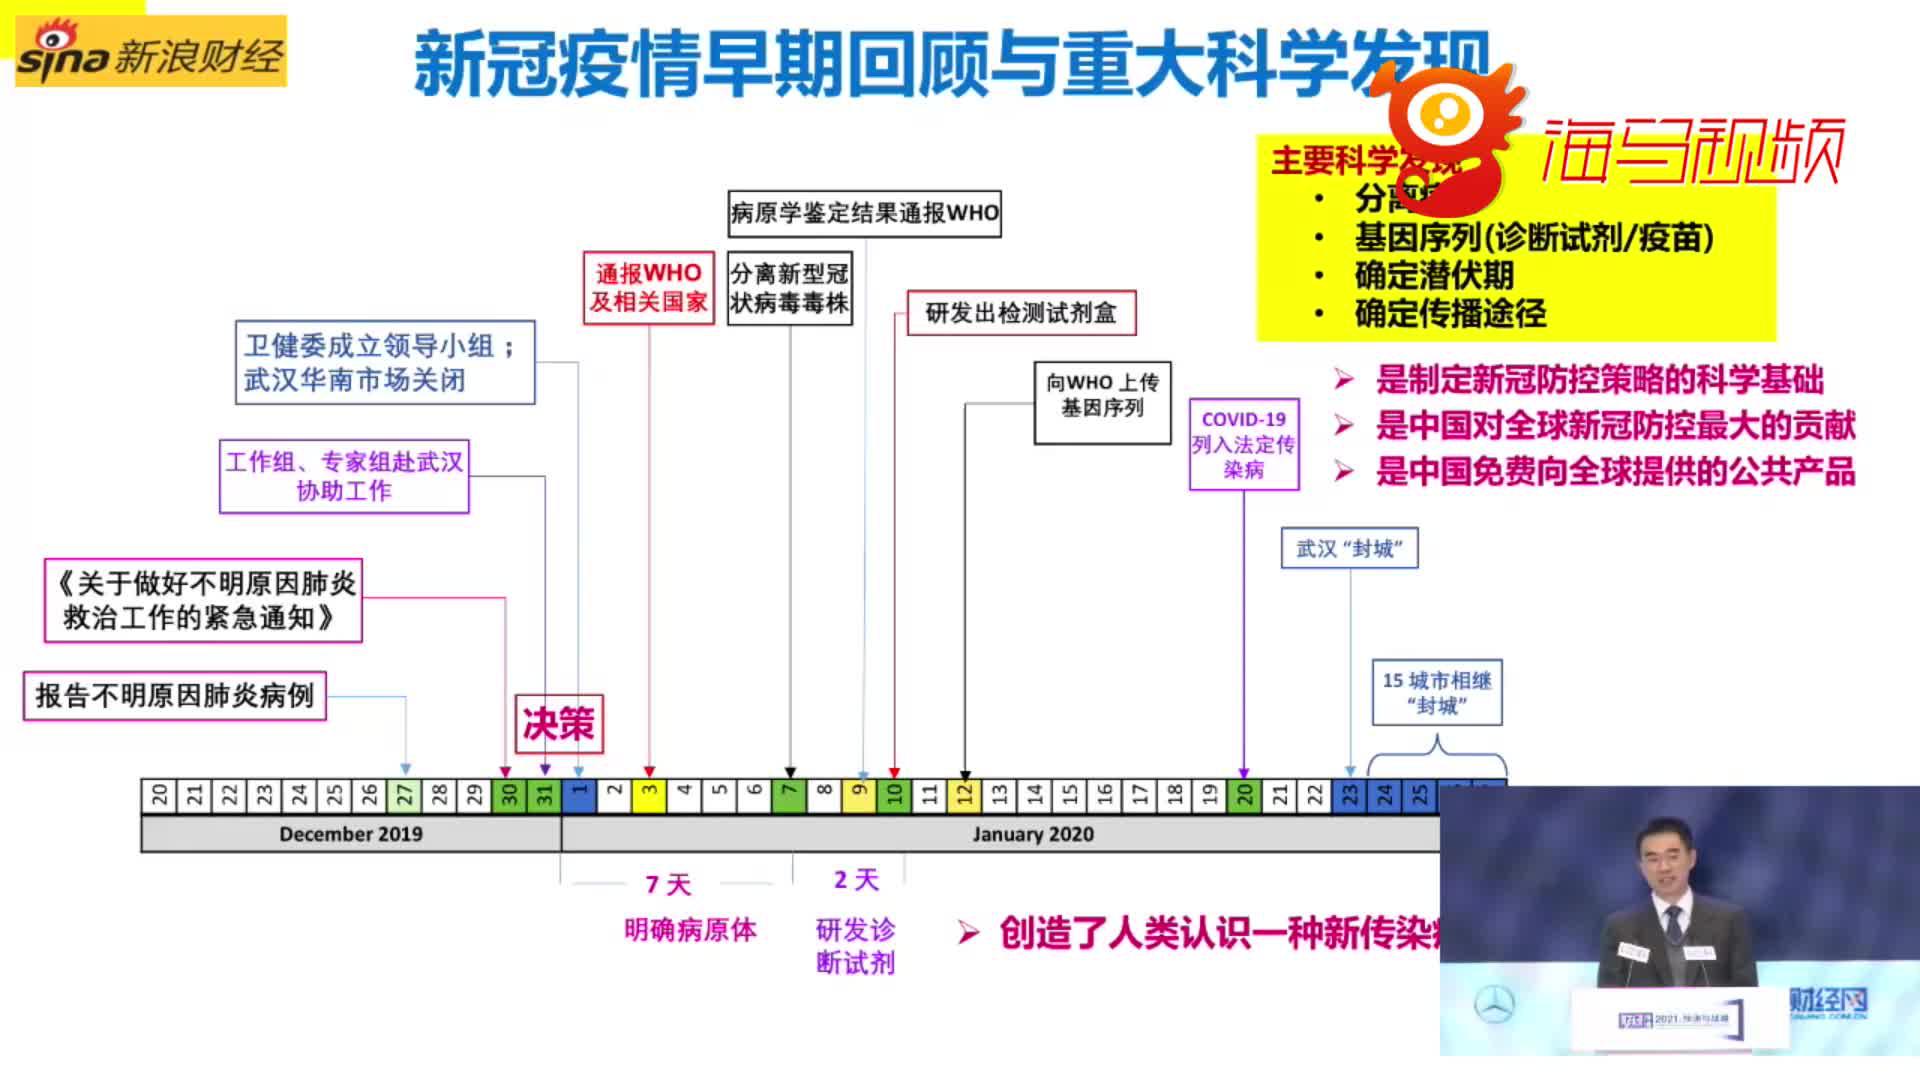 关闭华南海鲜市场背后:北京专家与武汉专家分歧巨大 论至凌晨4点